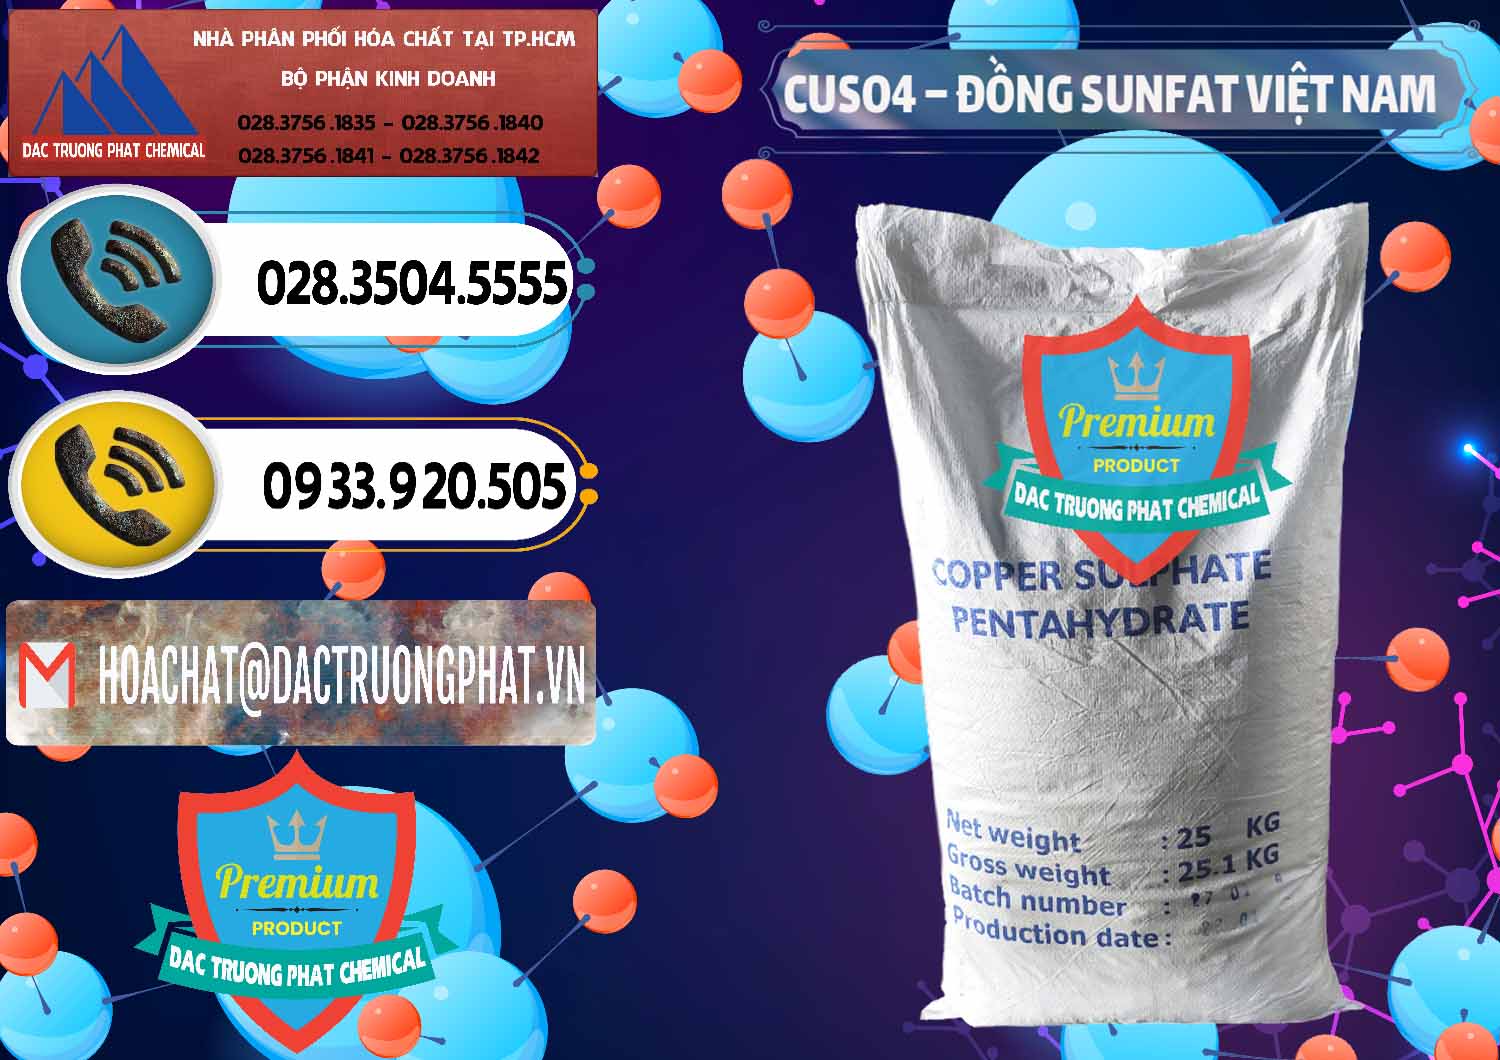 Cty cung cấp & bán CuSO4 – Đồng Sunfat Dạng Bột Việt Nam - 0196 - Nơi cung cấp và bán hóa chất tại TP.HCM - hoachatdetnhuom.vn